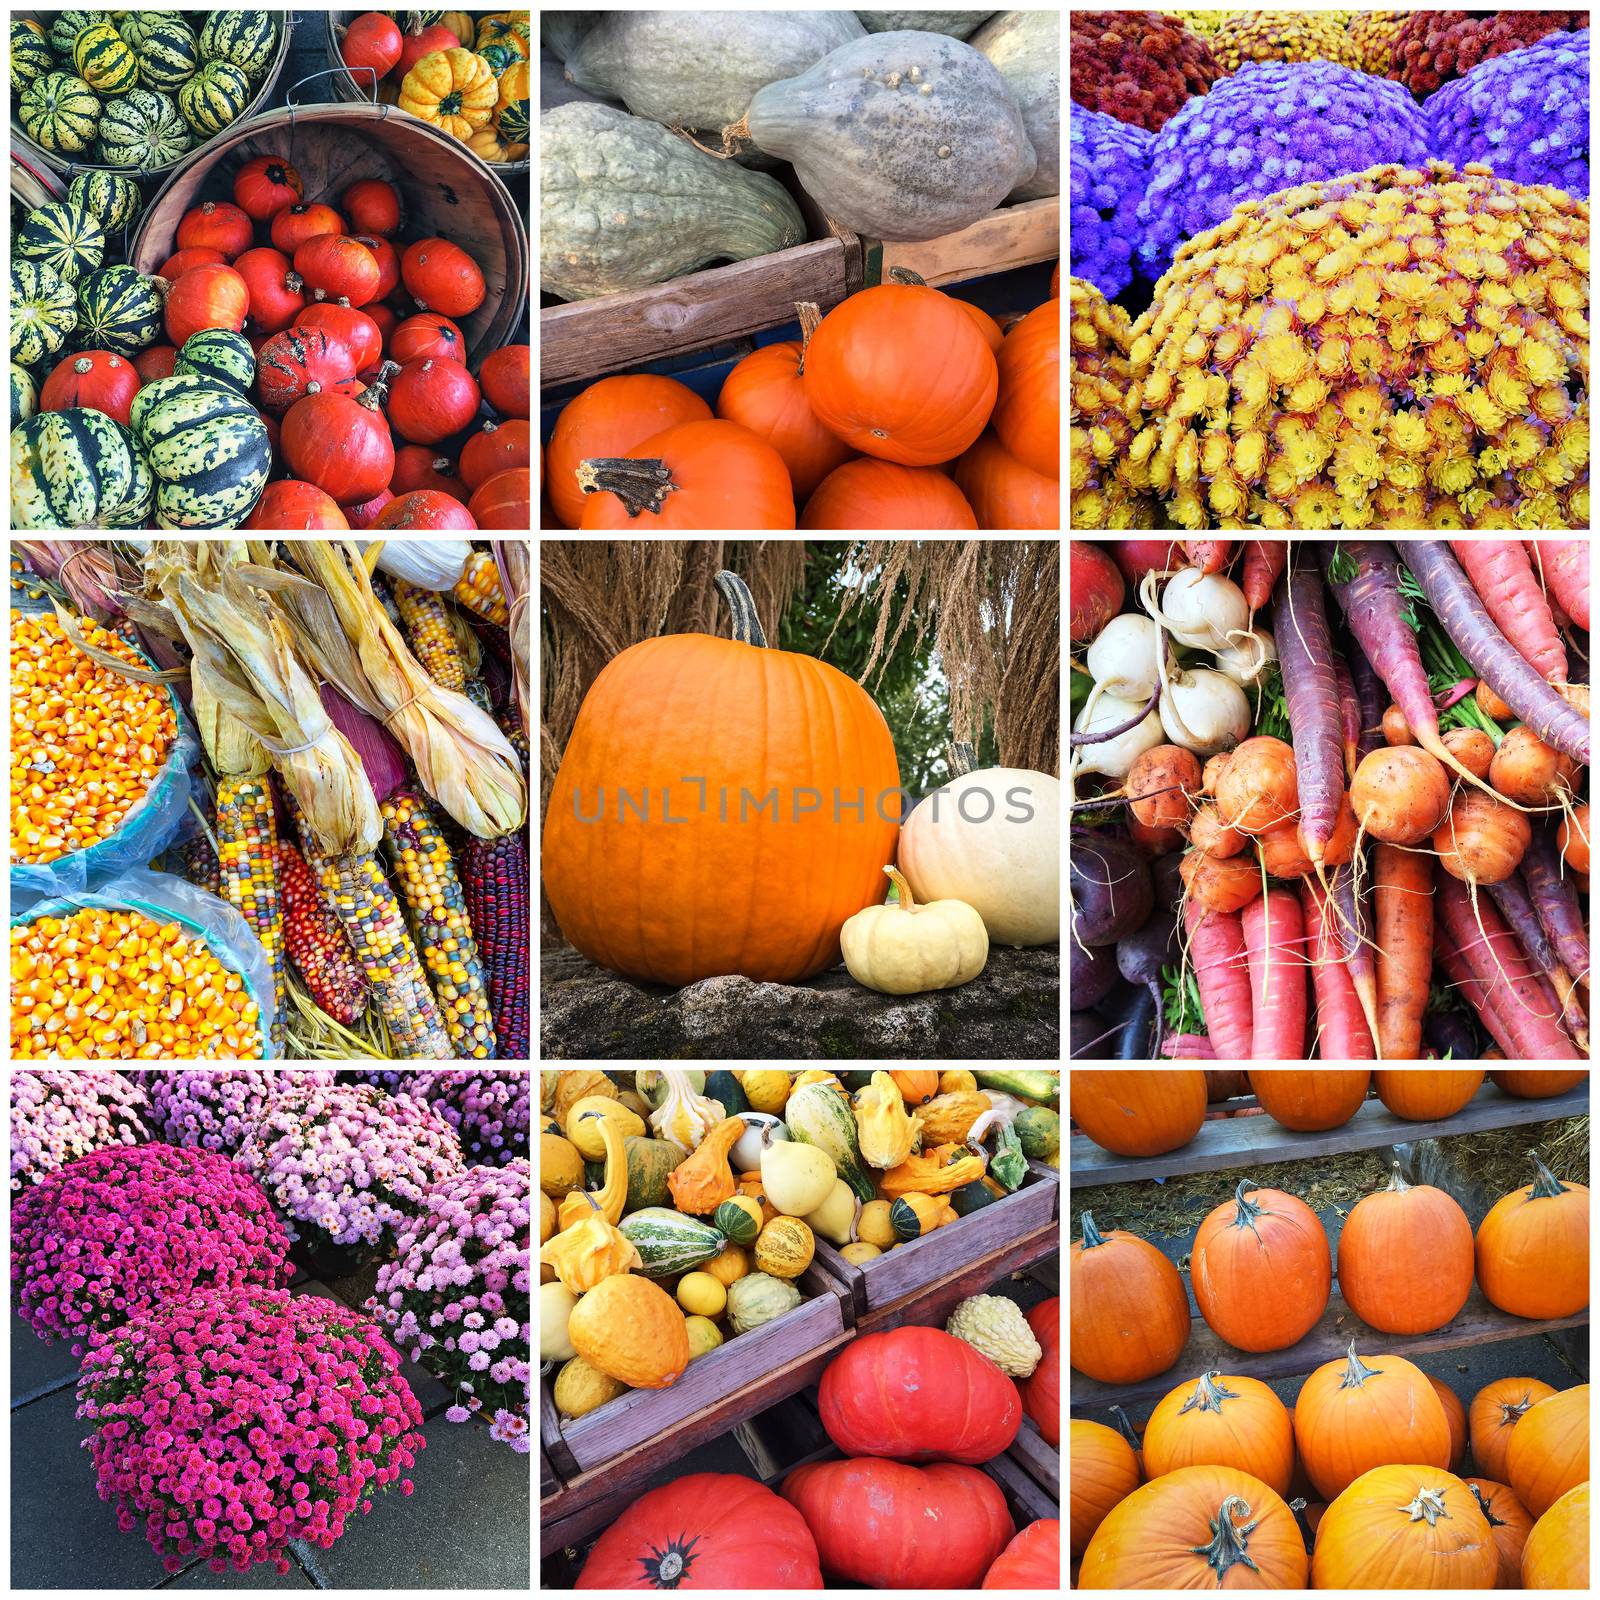 Autumn market collage by anikasalsera